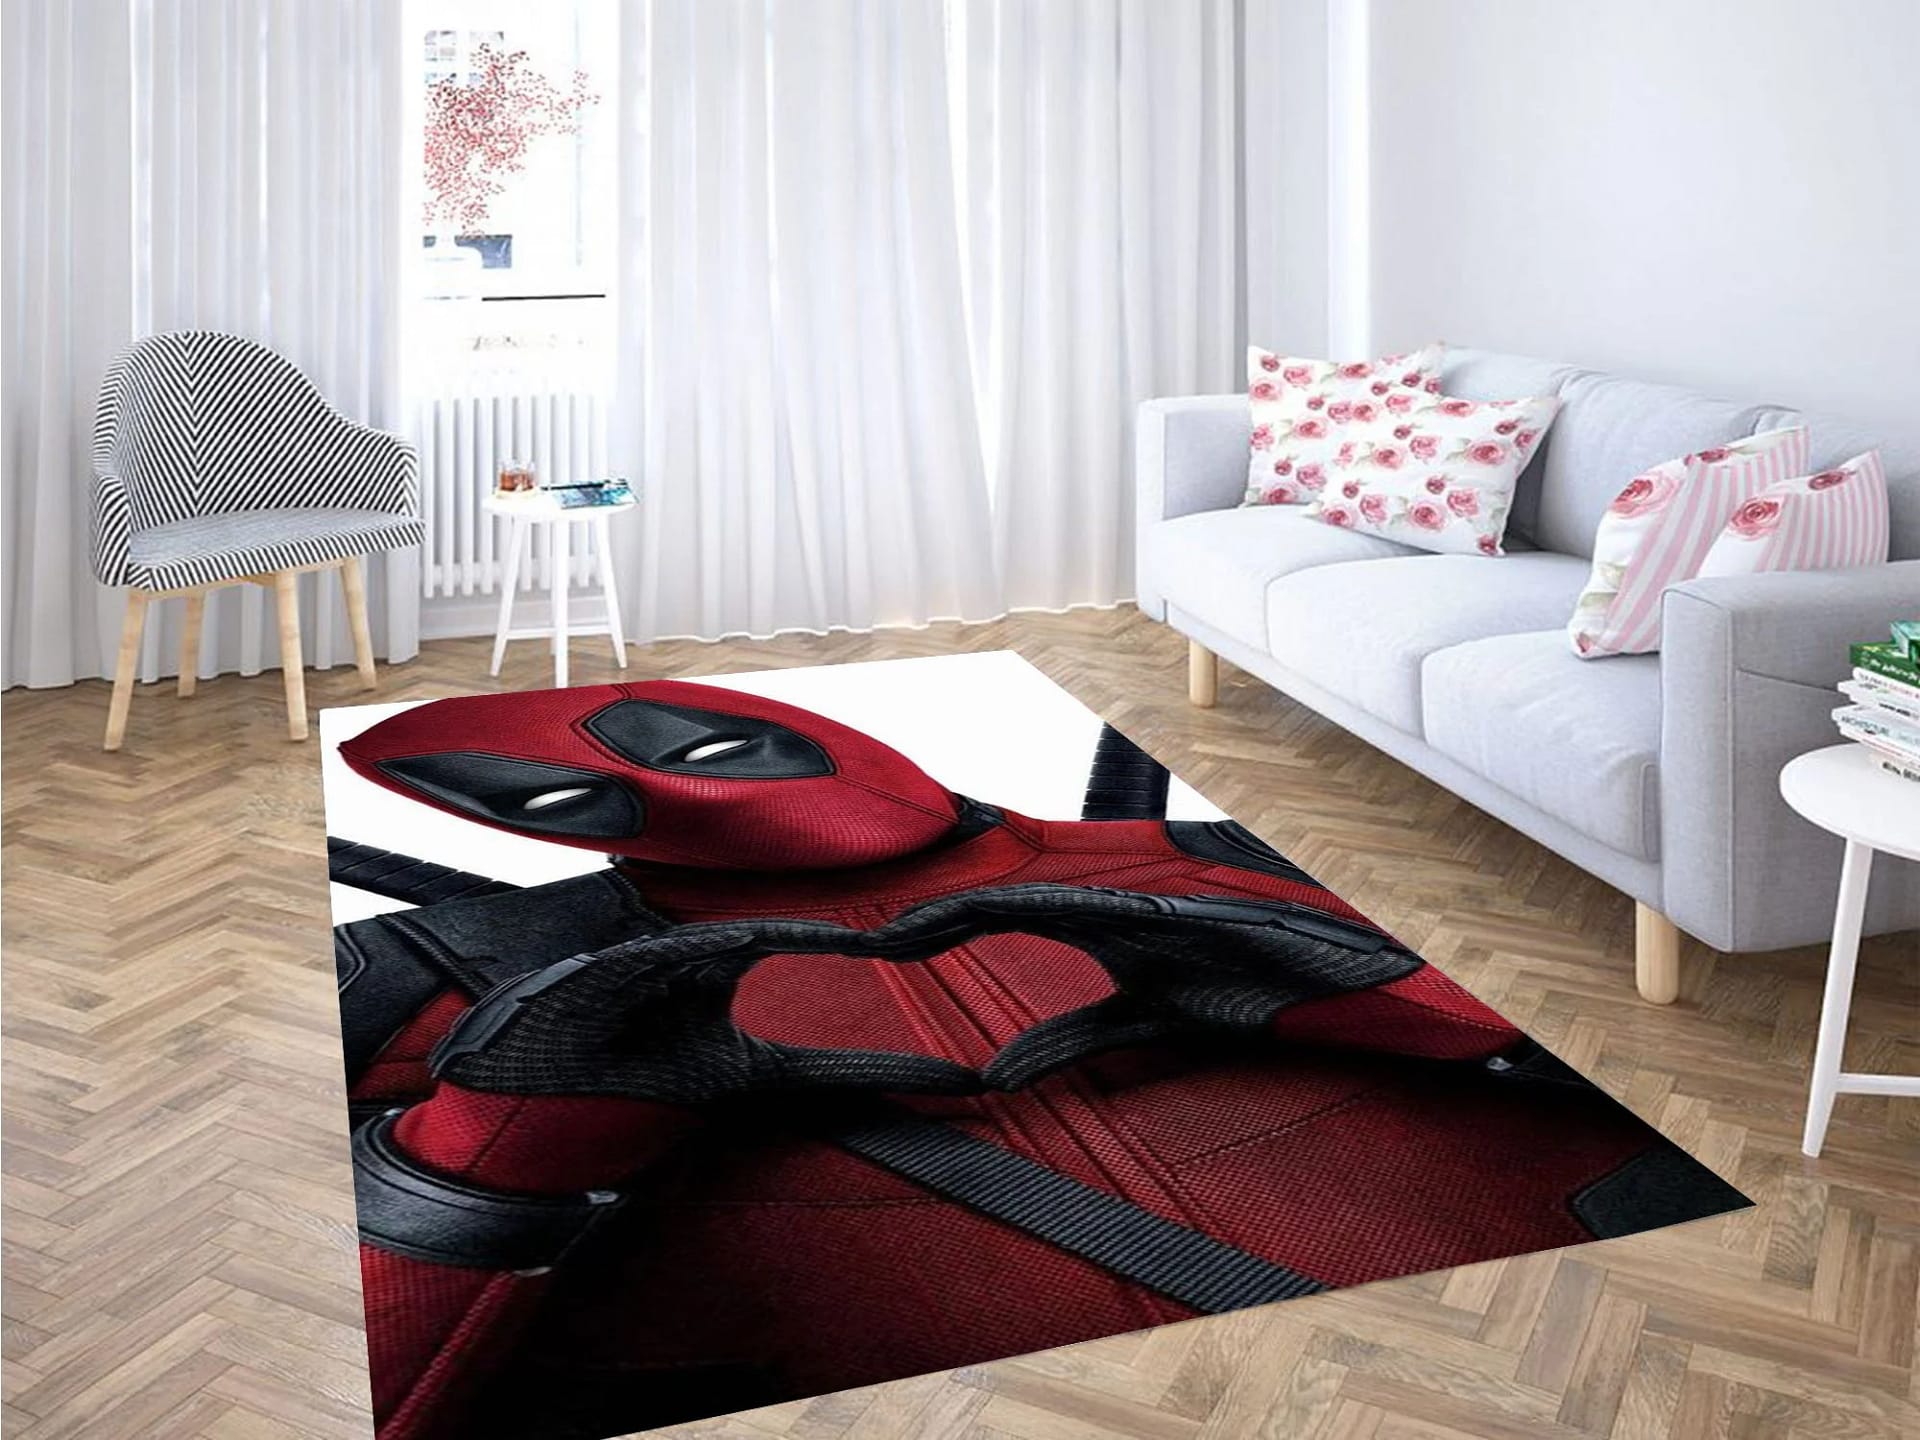 Deadpool Love Wallpaper Carpet Rug